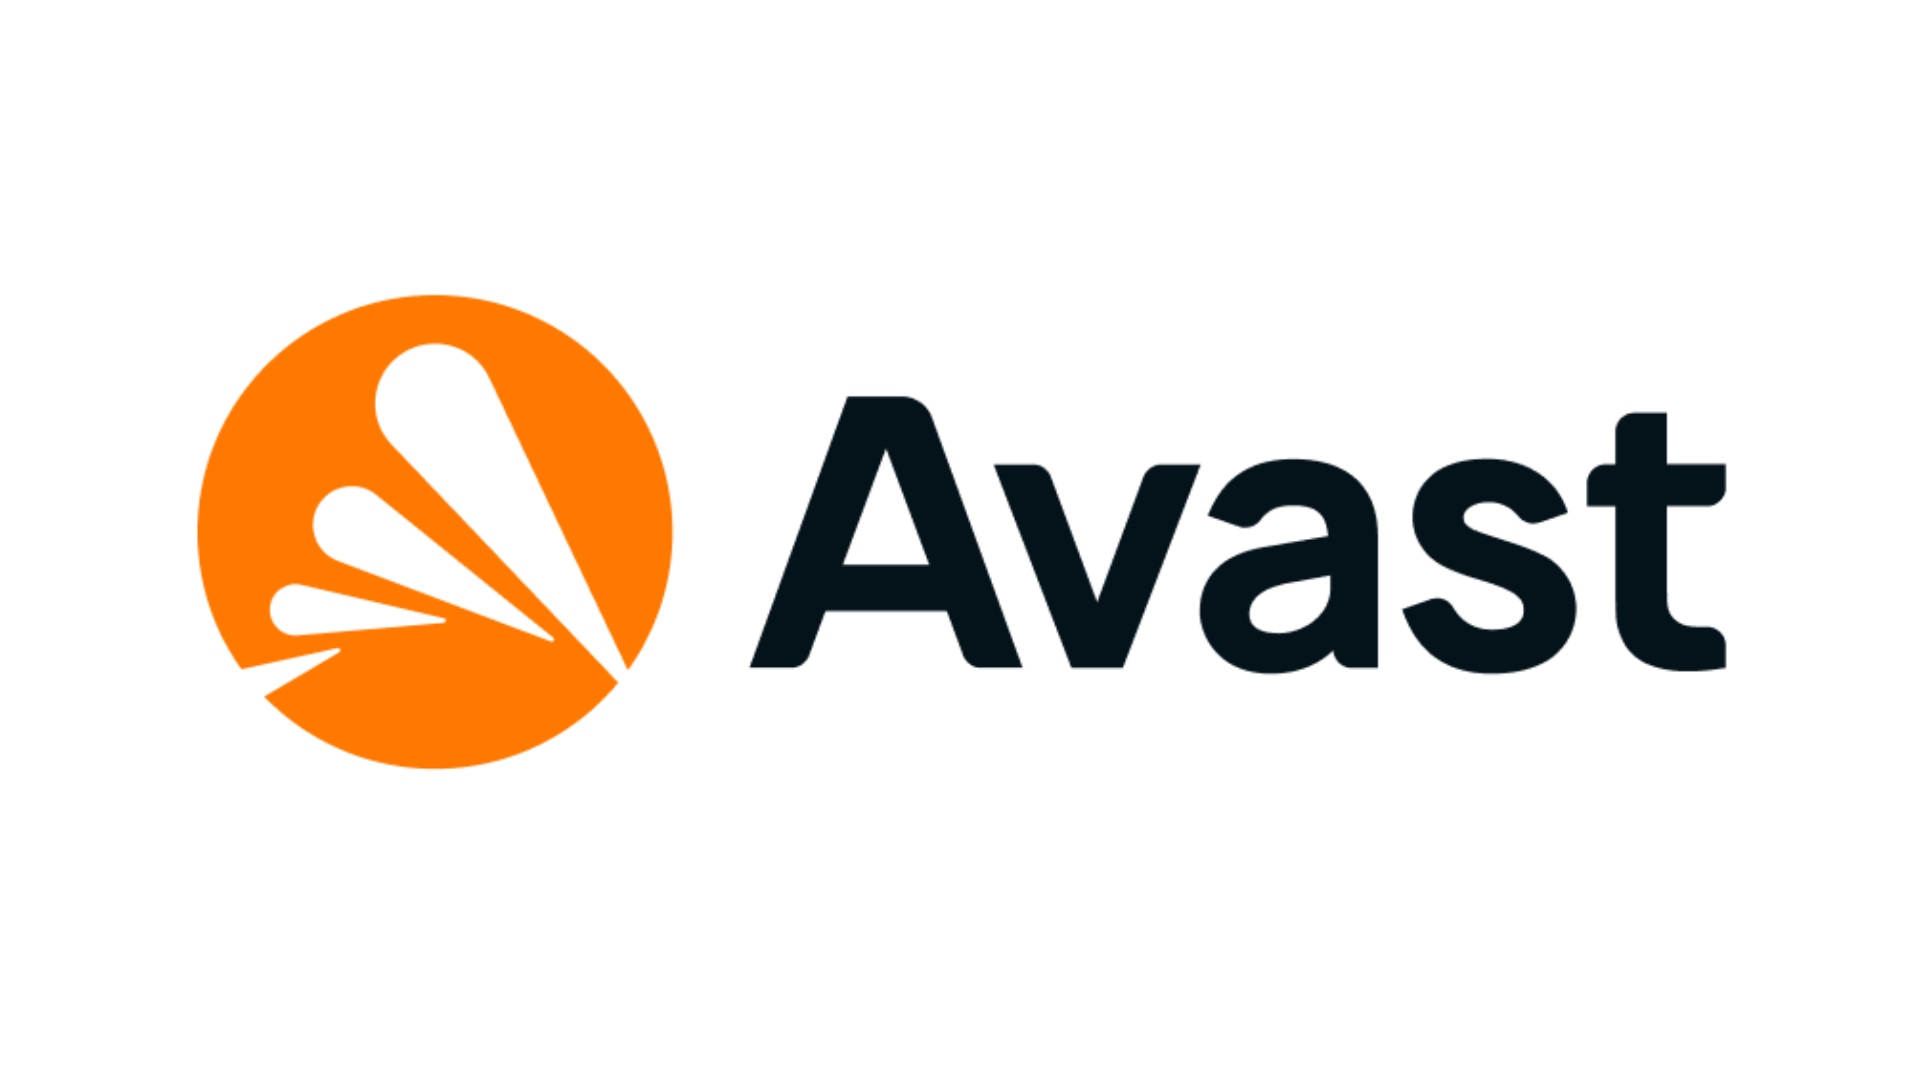 Най -добър антивирус: Avast. Изображението показва логото на компанията